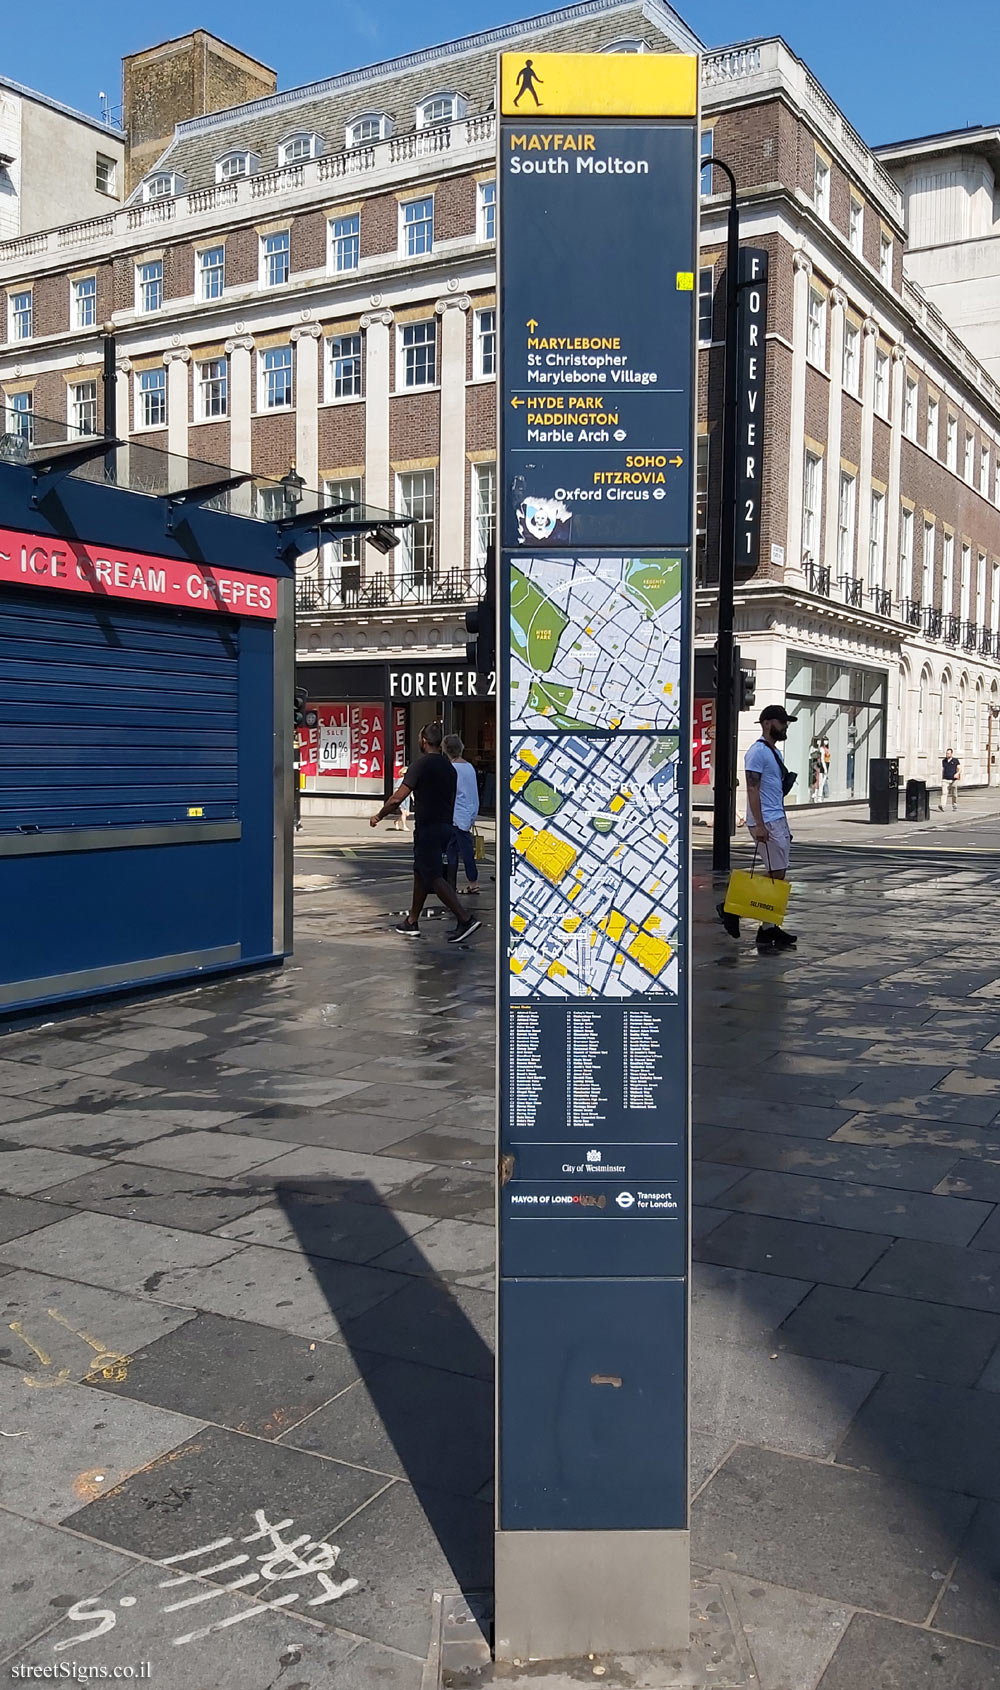 London - MAYFAIR - A pedestrian signpost